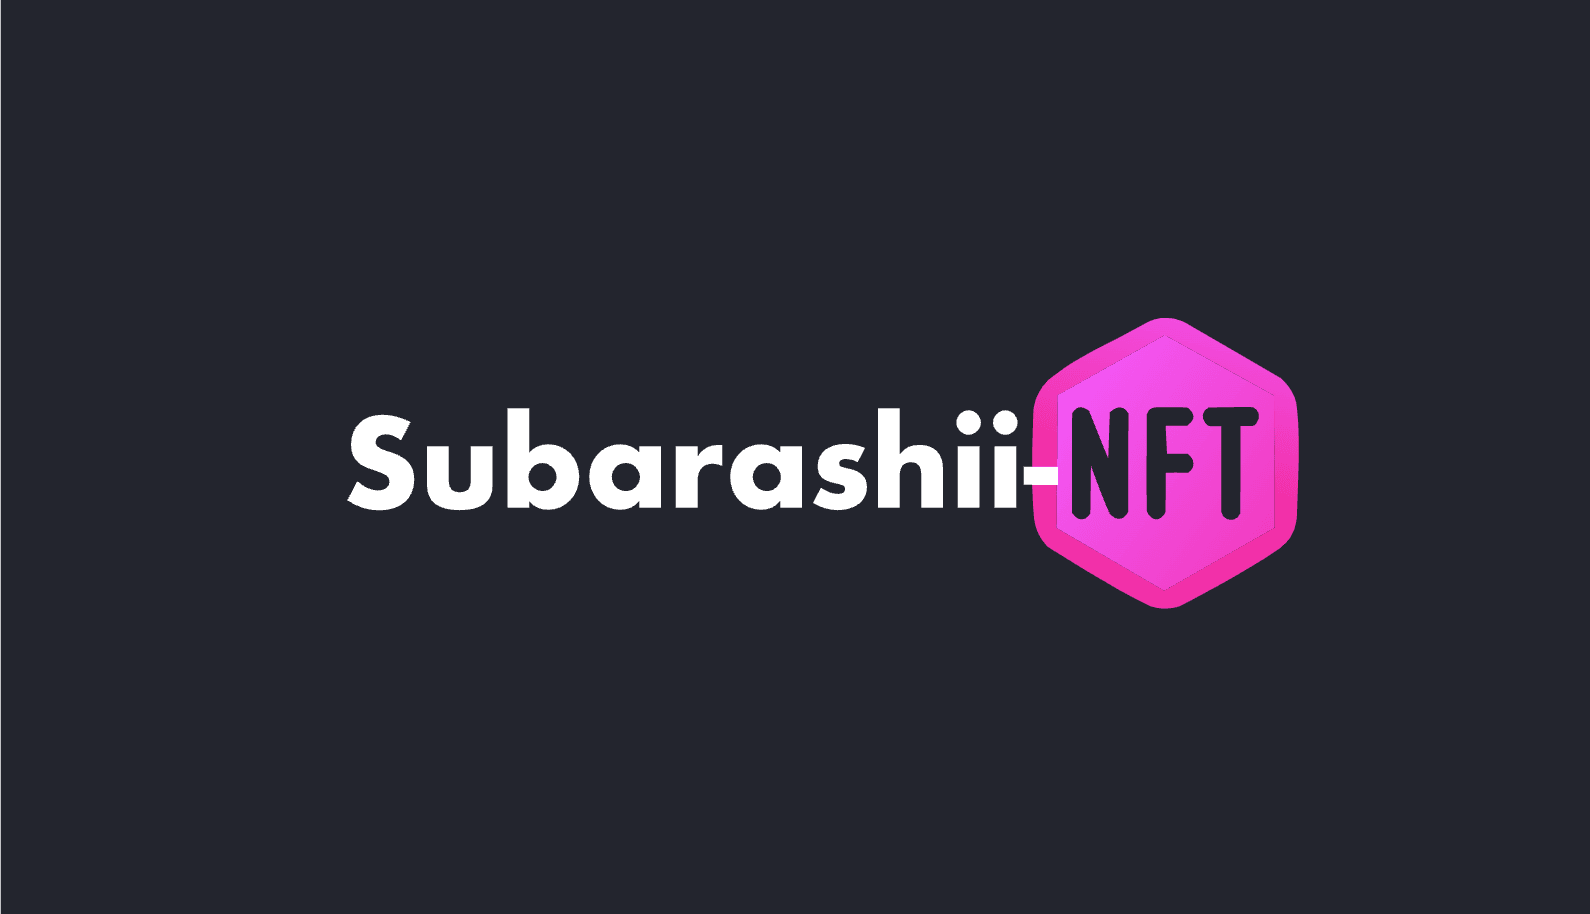 Subarashii-nft banner